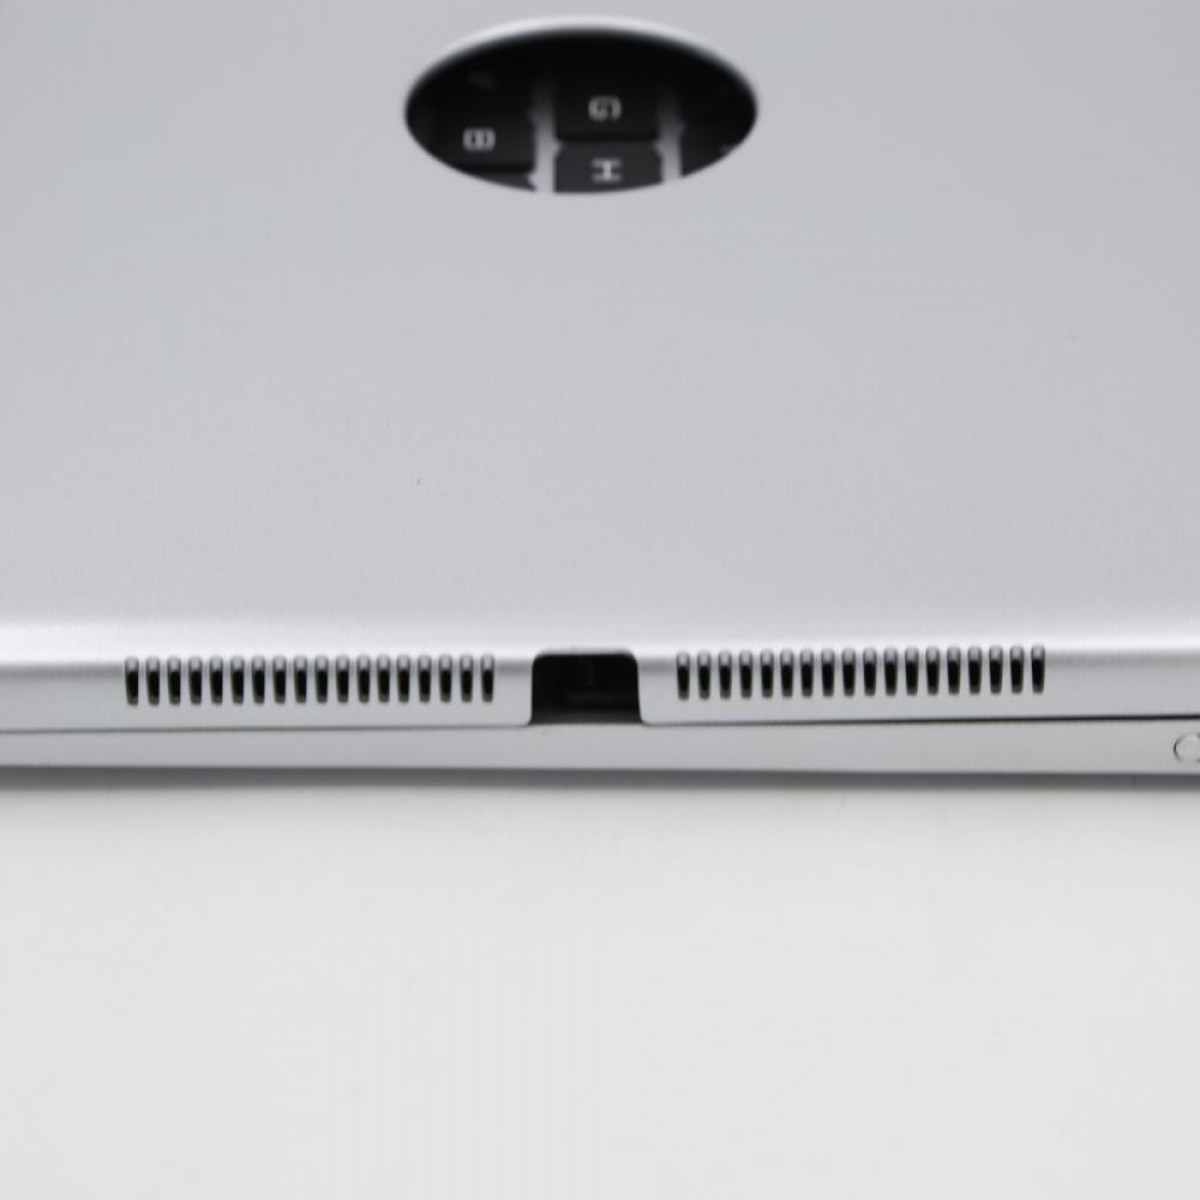 / Tastatur-Hülle mit 1/2, Schutzhülle Pro Air für iPad Bluetooth-Tastatur INF 9.7